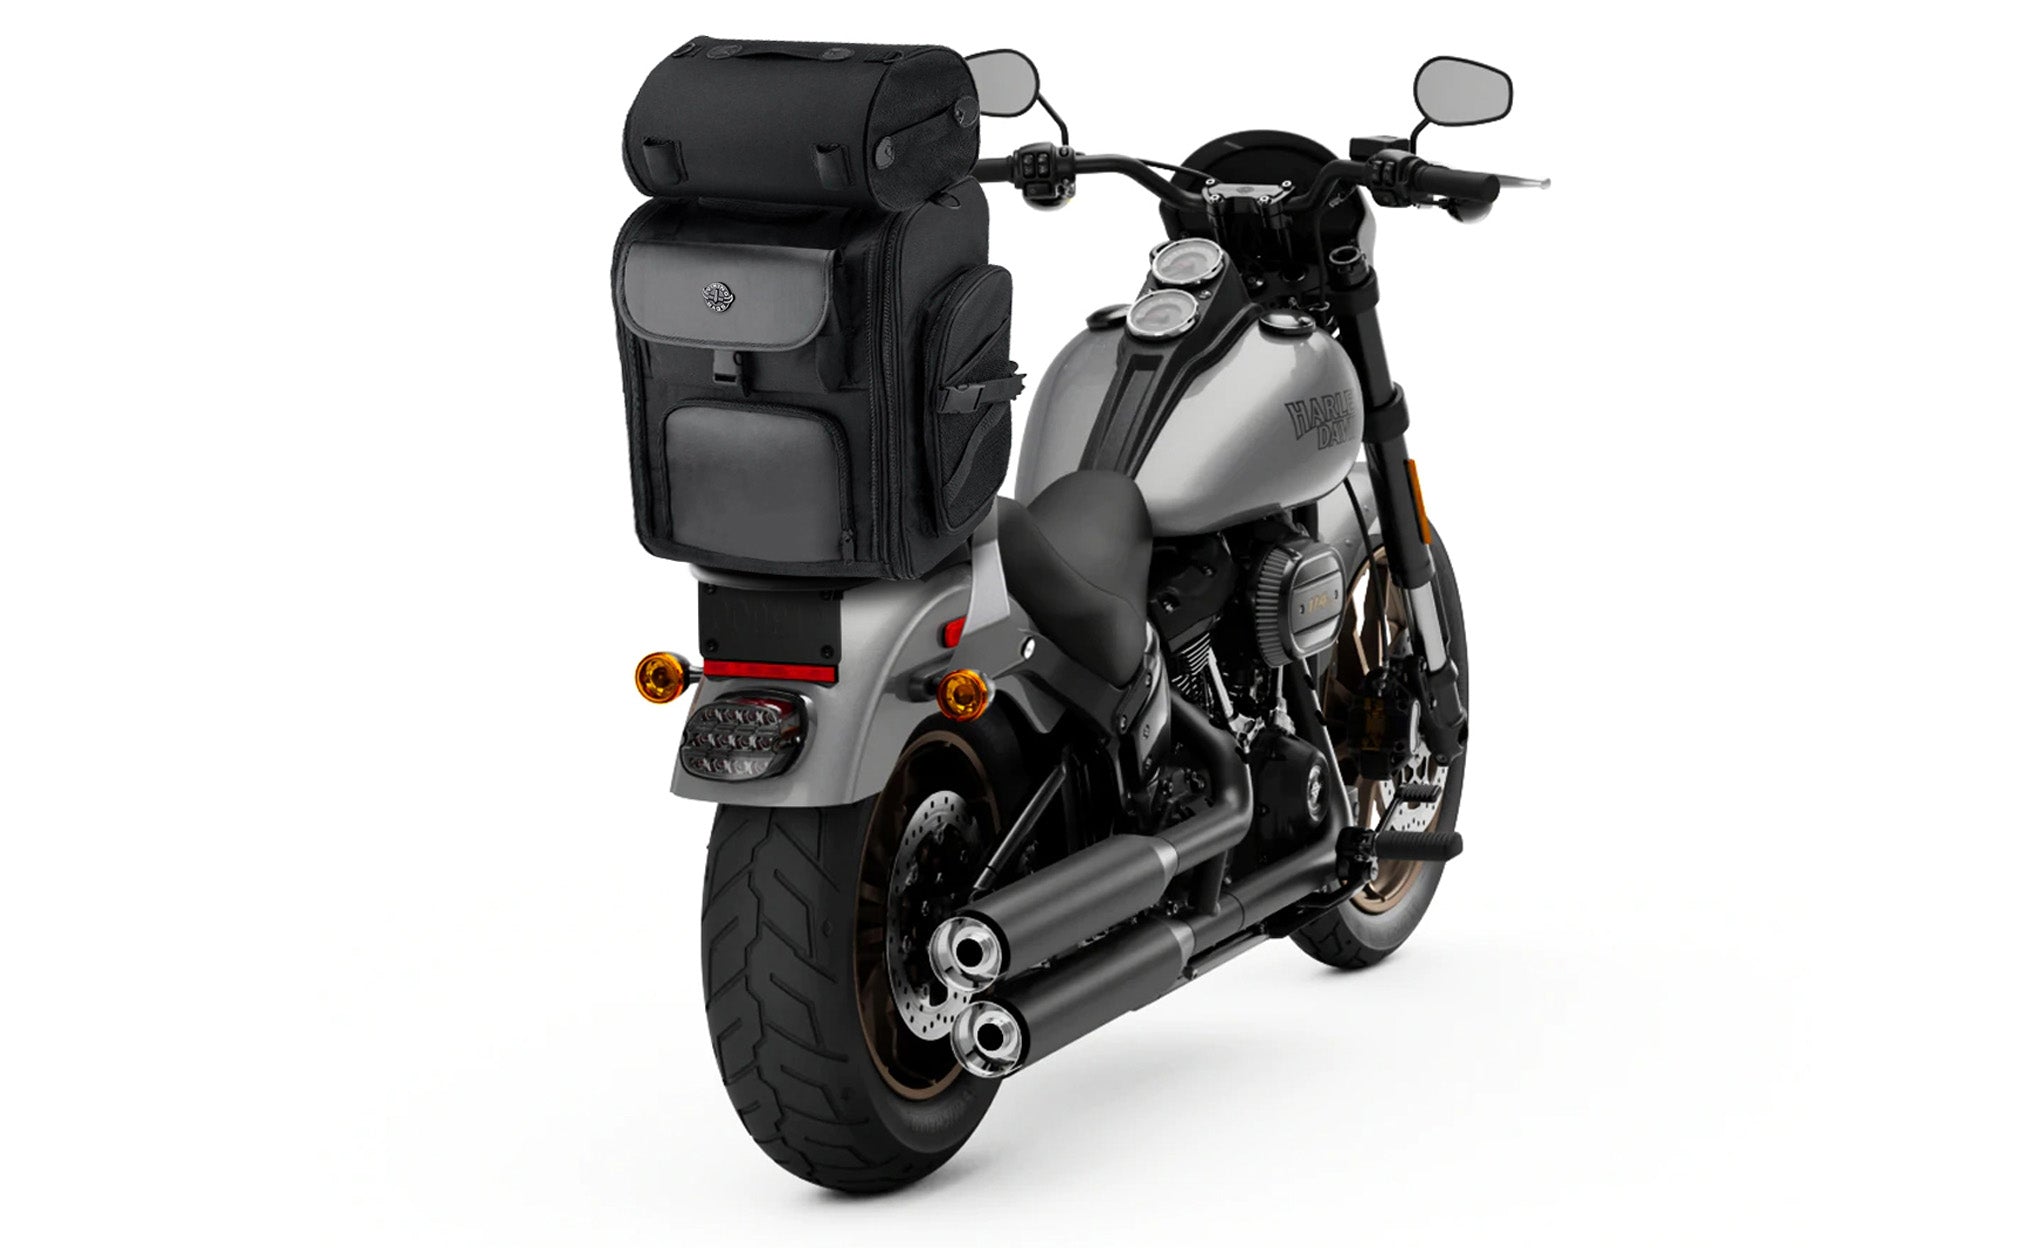 Viking Dwarf Medium Motorcycle Tail Bag for Harley Davidson Bag on Bike View @expand